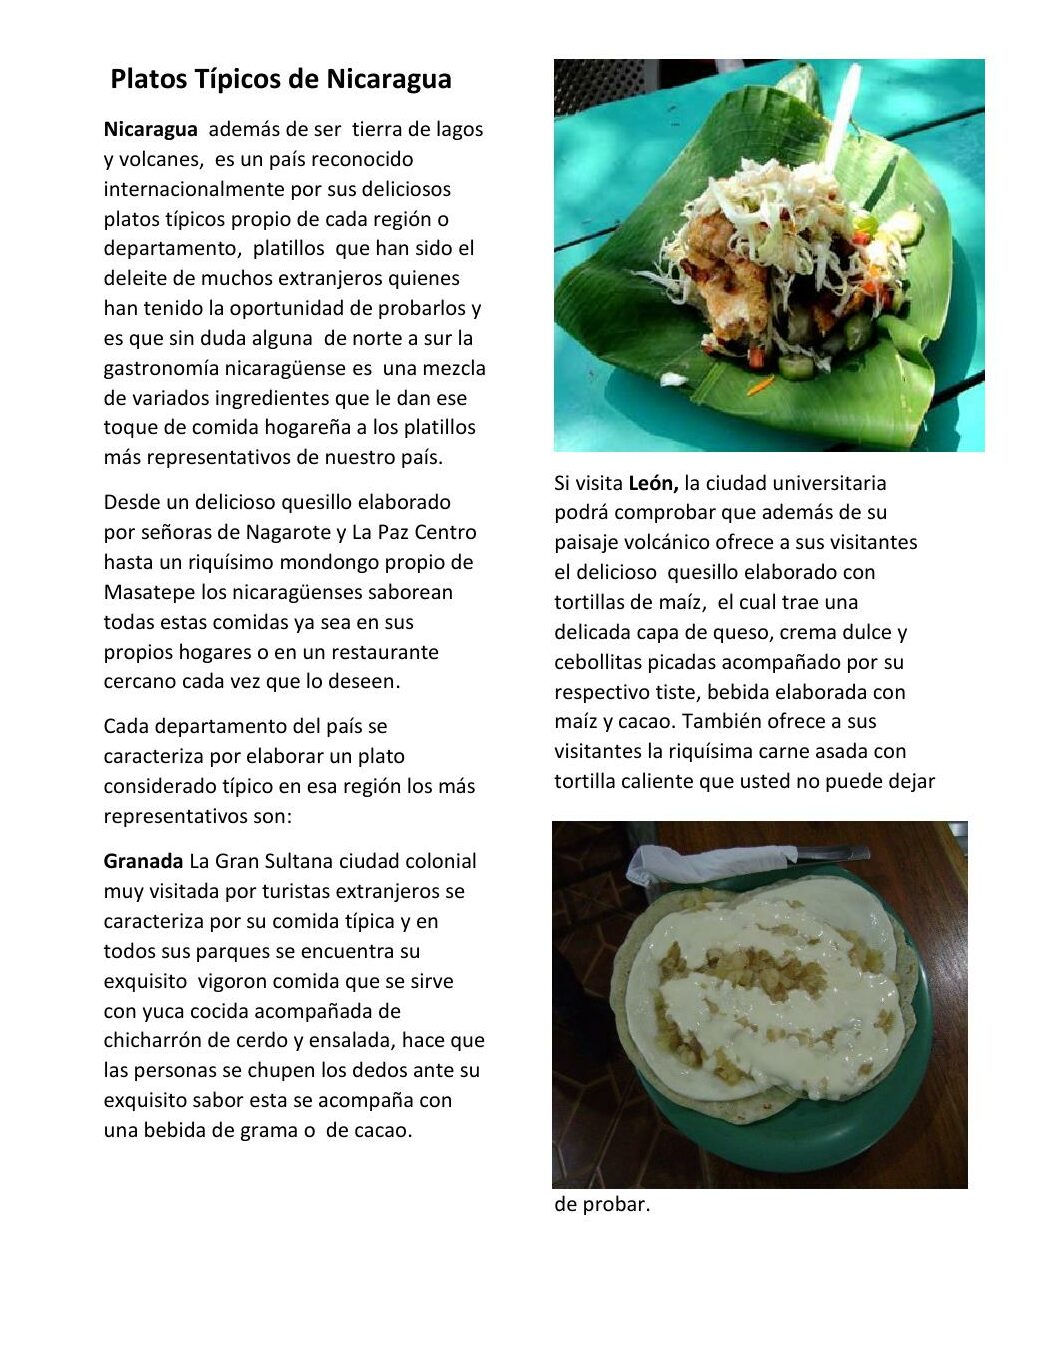 Descubre la deliciosa comida típica de Nicaragua: Sabores únicos y auténticos.